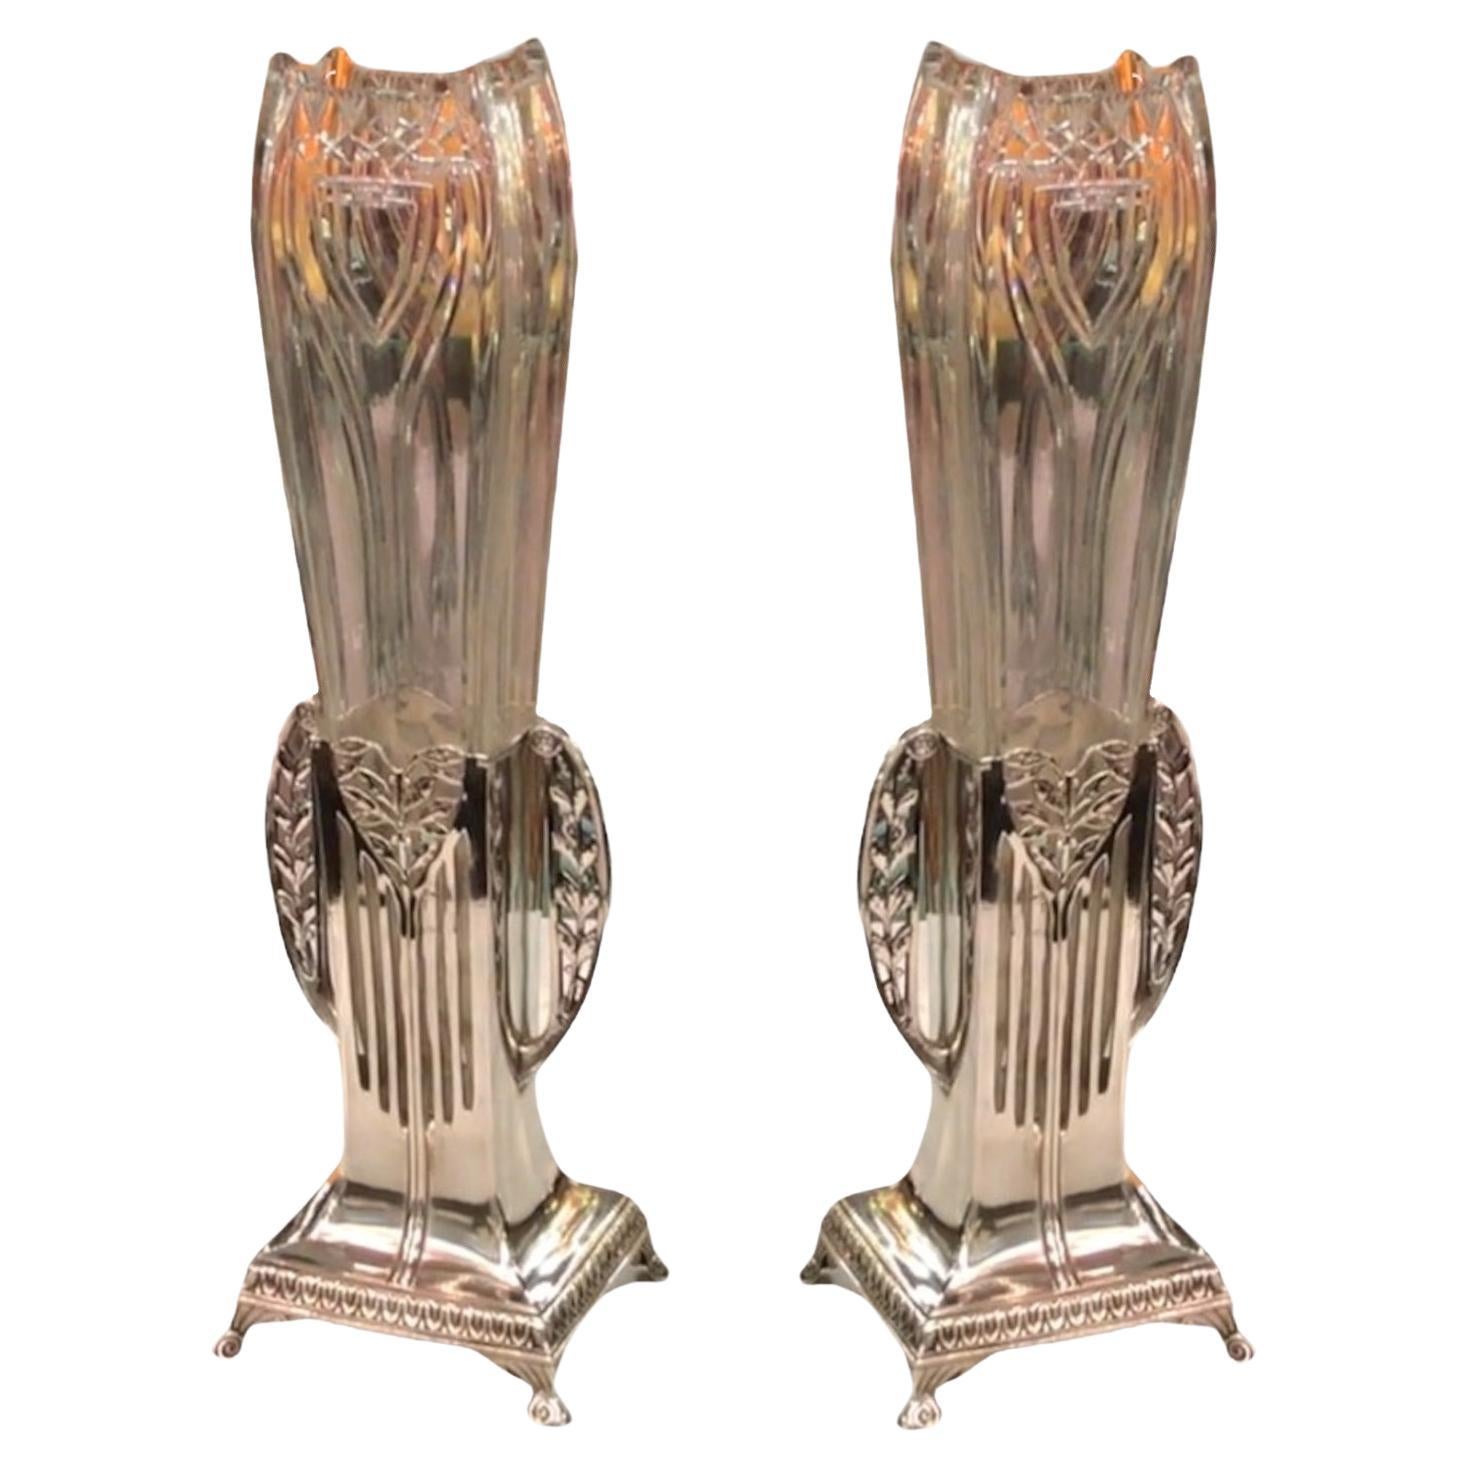 Pair of vases WMF, German, Style: Jugendstil, Art Nouveau, Liberty, 1900